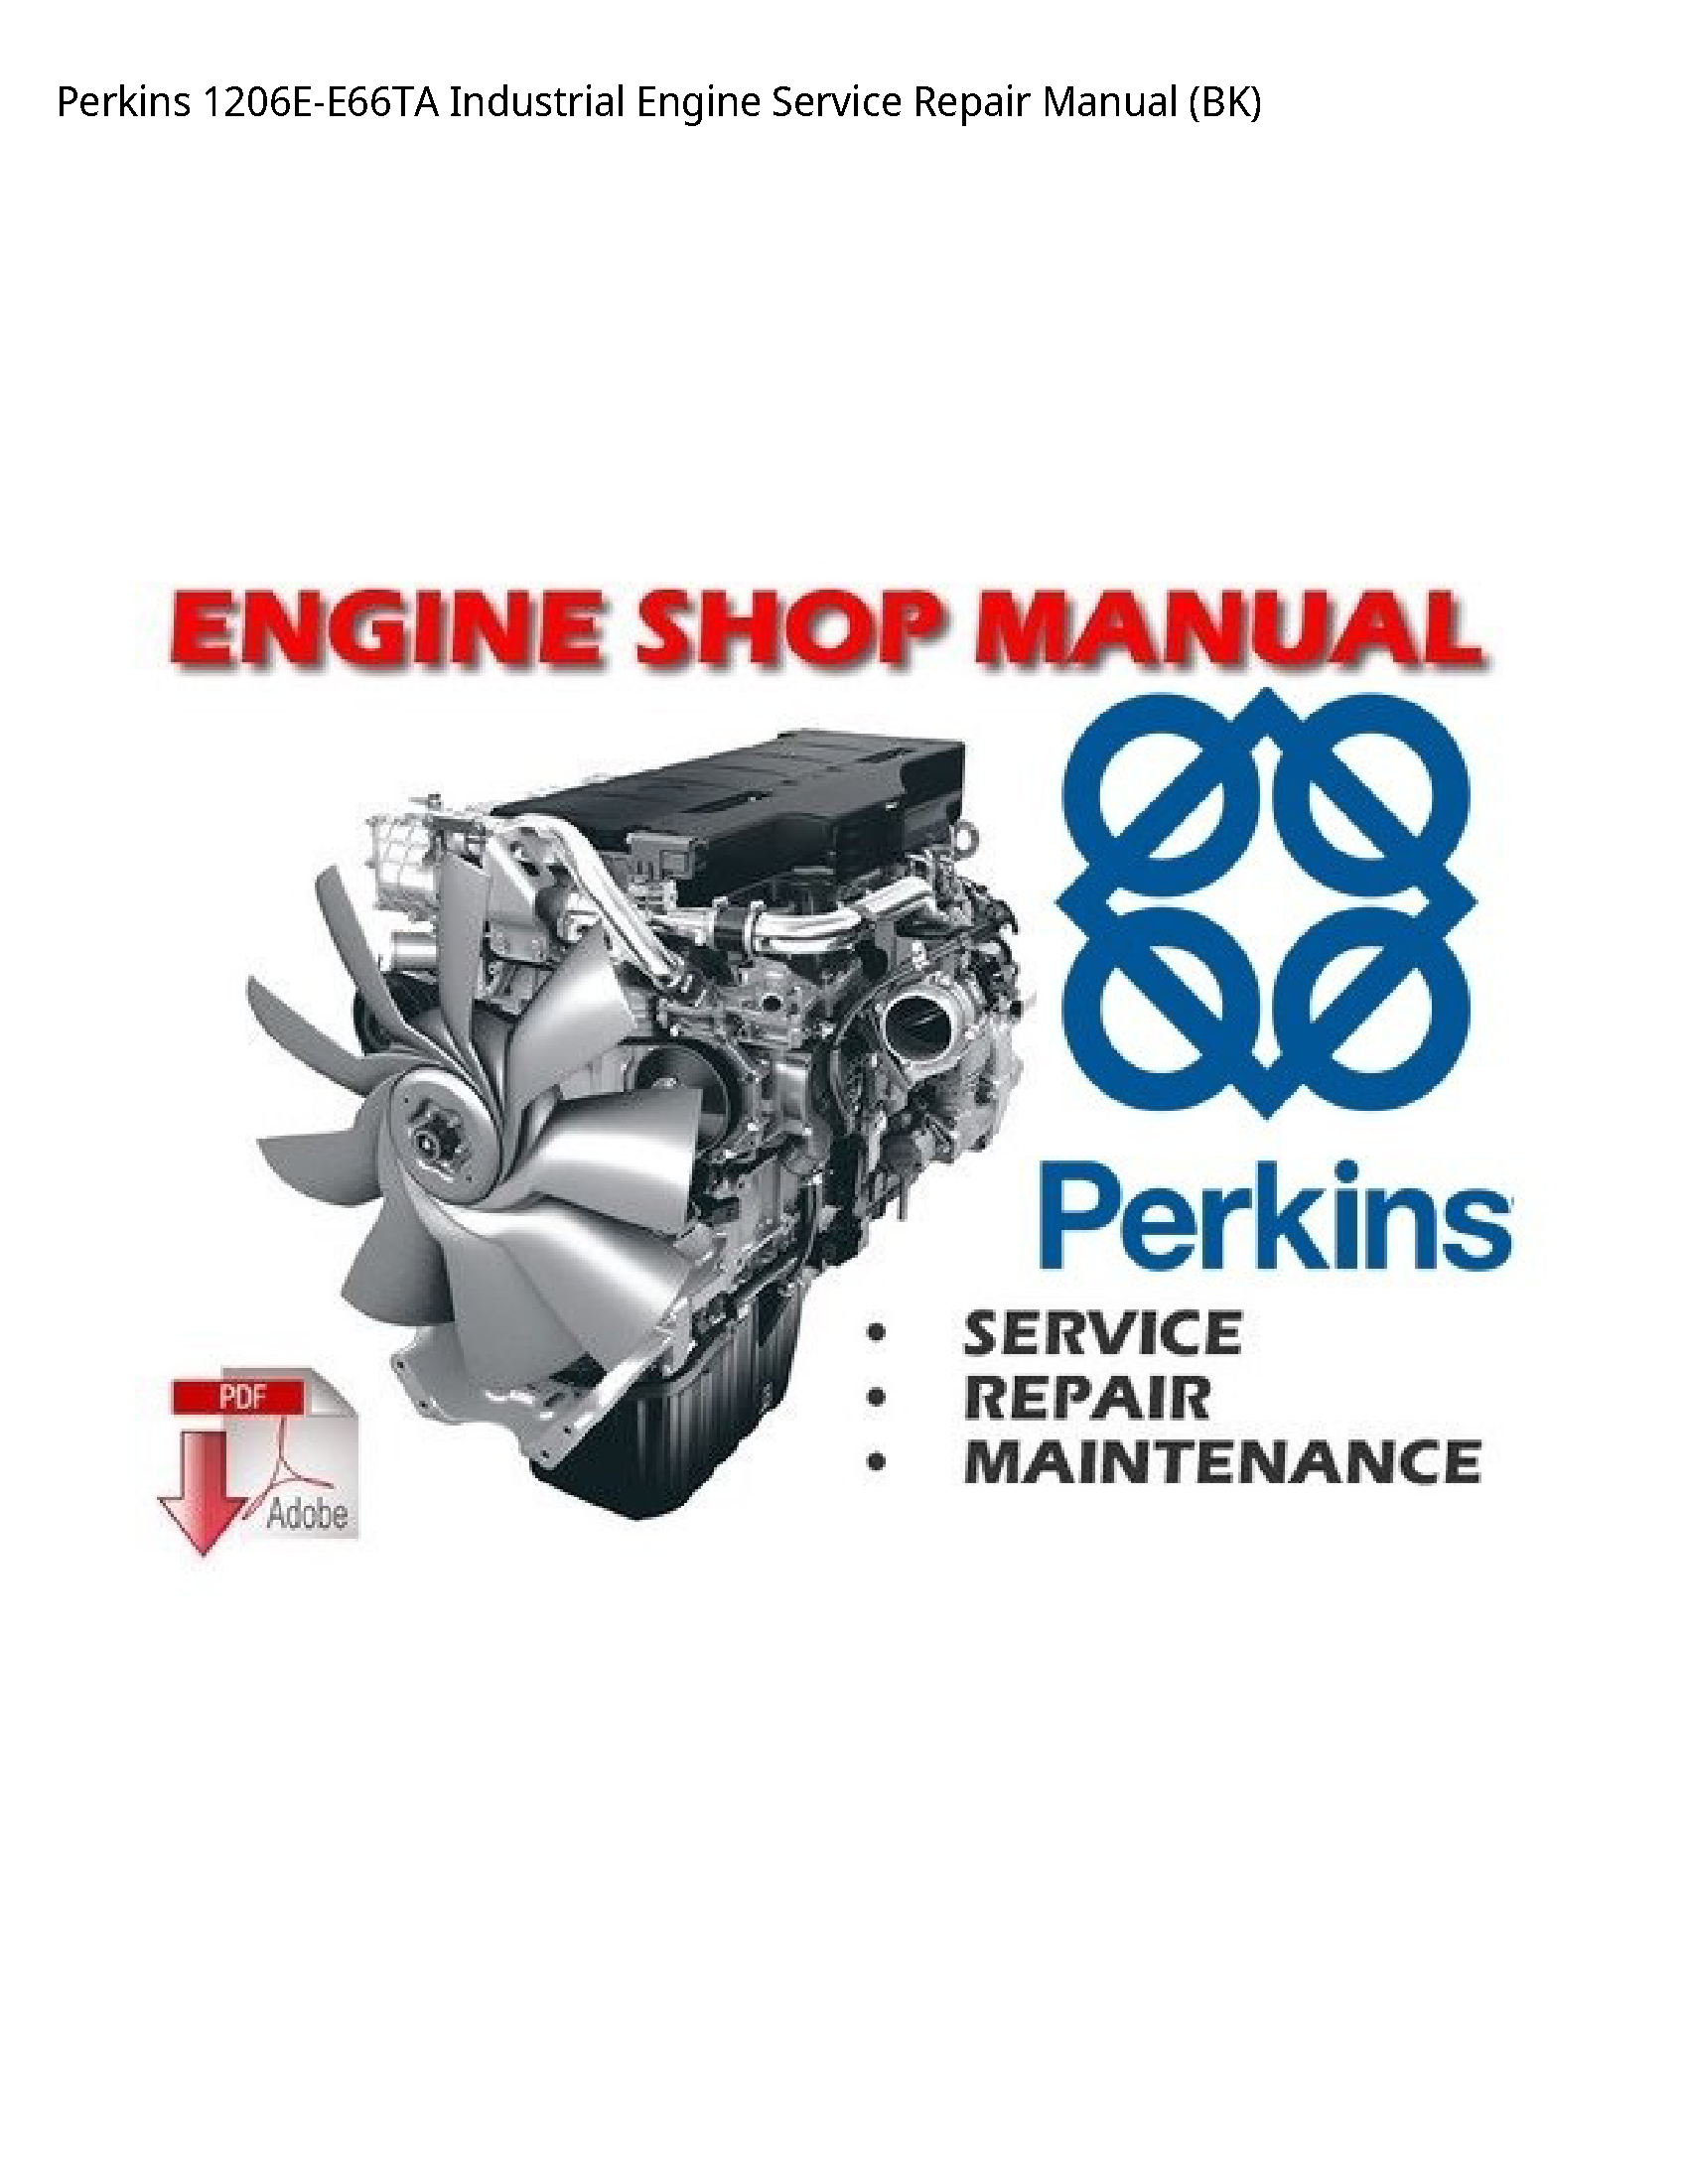 Perkins 1206E-E66TA Industrial Engine manual